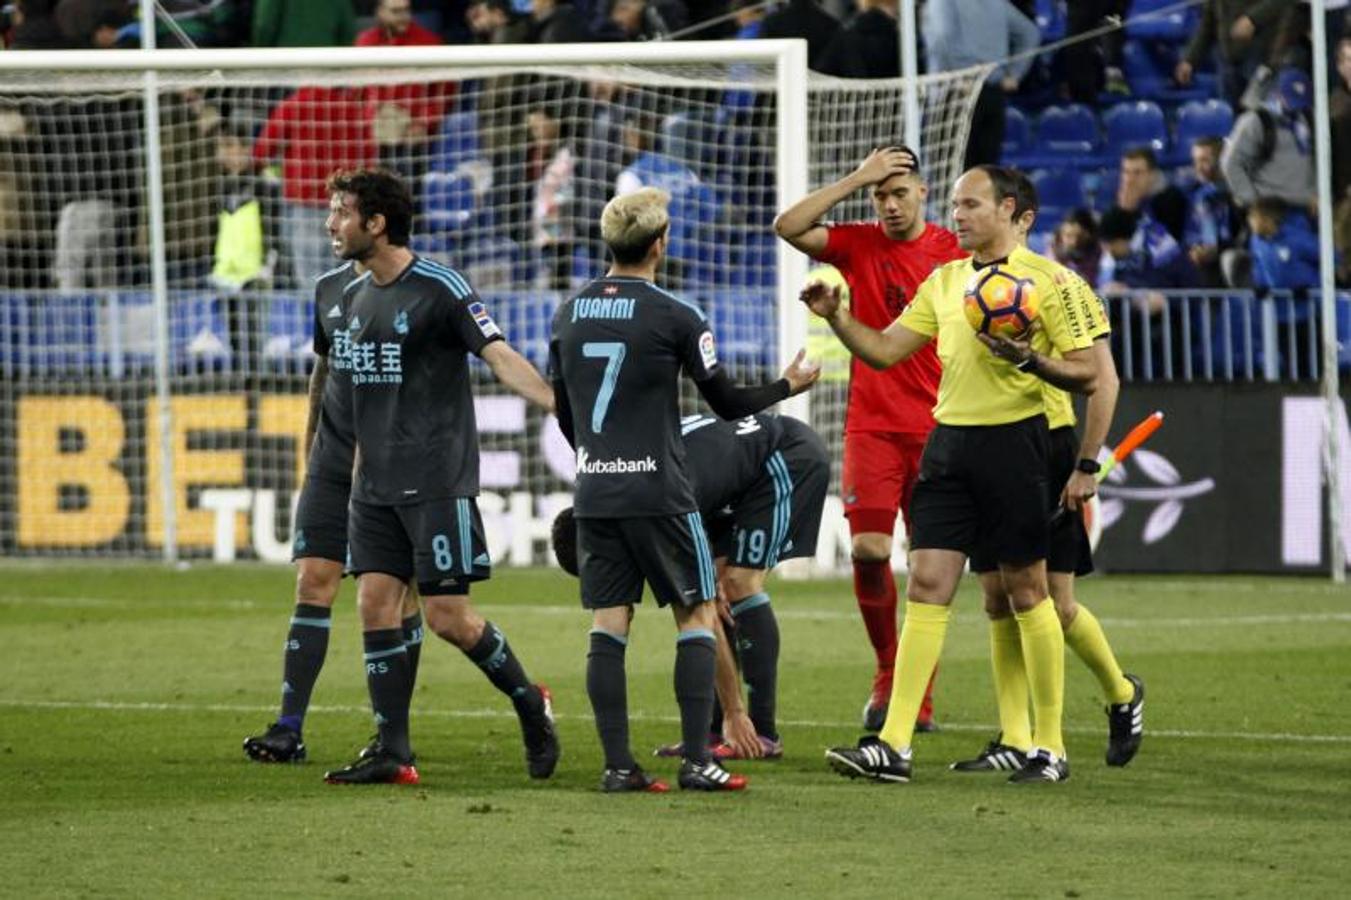 La Real Sociedad se coloca quinta en la Liga tras vencer en Málaga